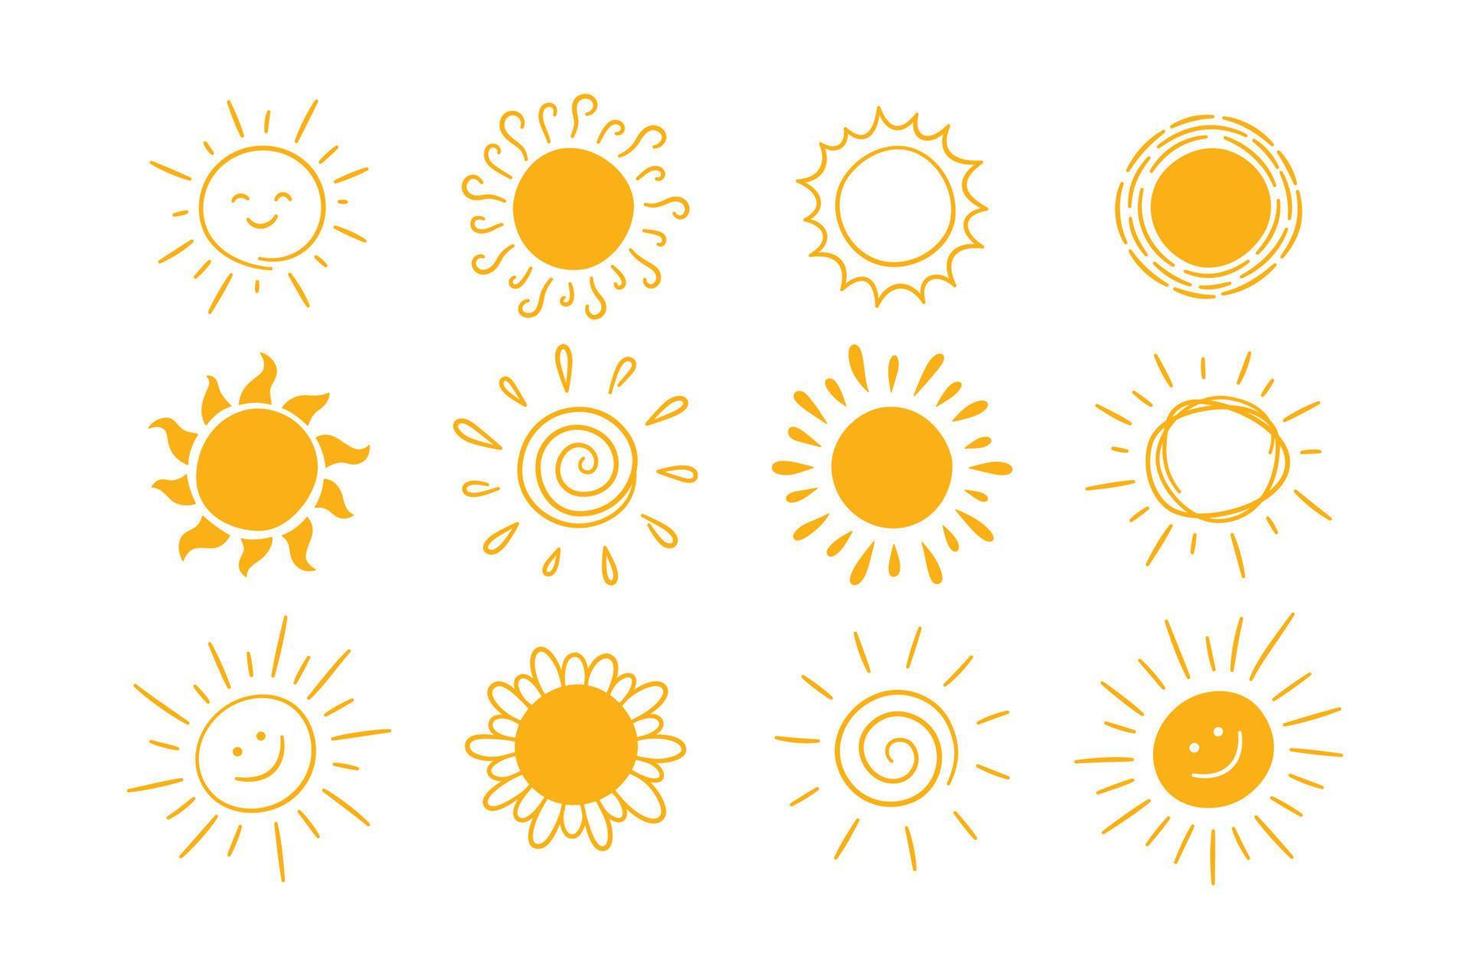 klotter annorlunda Sol ikoner uppsättning. klottra gul Sol med strålar symboler. klotter barn ritningar samling. hand dragen brista. varm väder tecken. vektor illustration isolerat på vit bakgrund